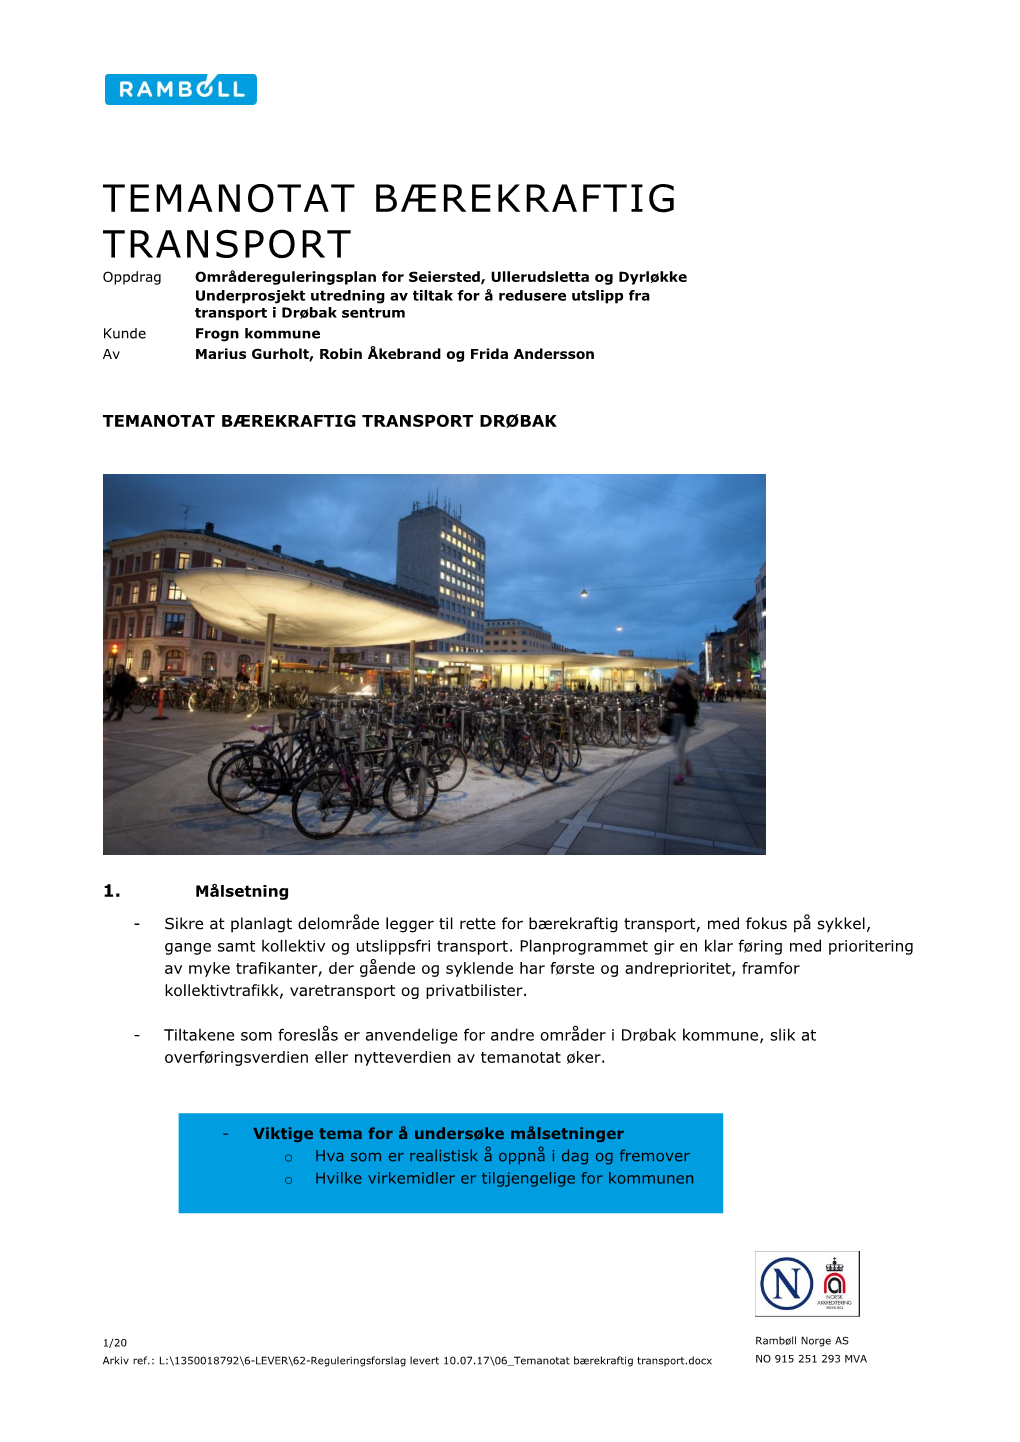 Temanotat Bærekraftig Transport